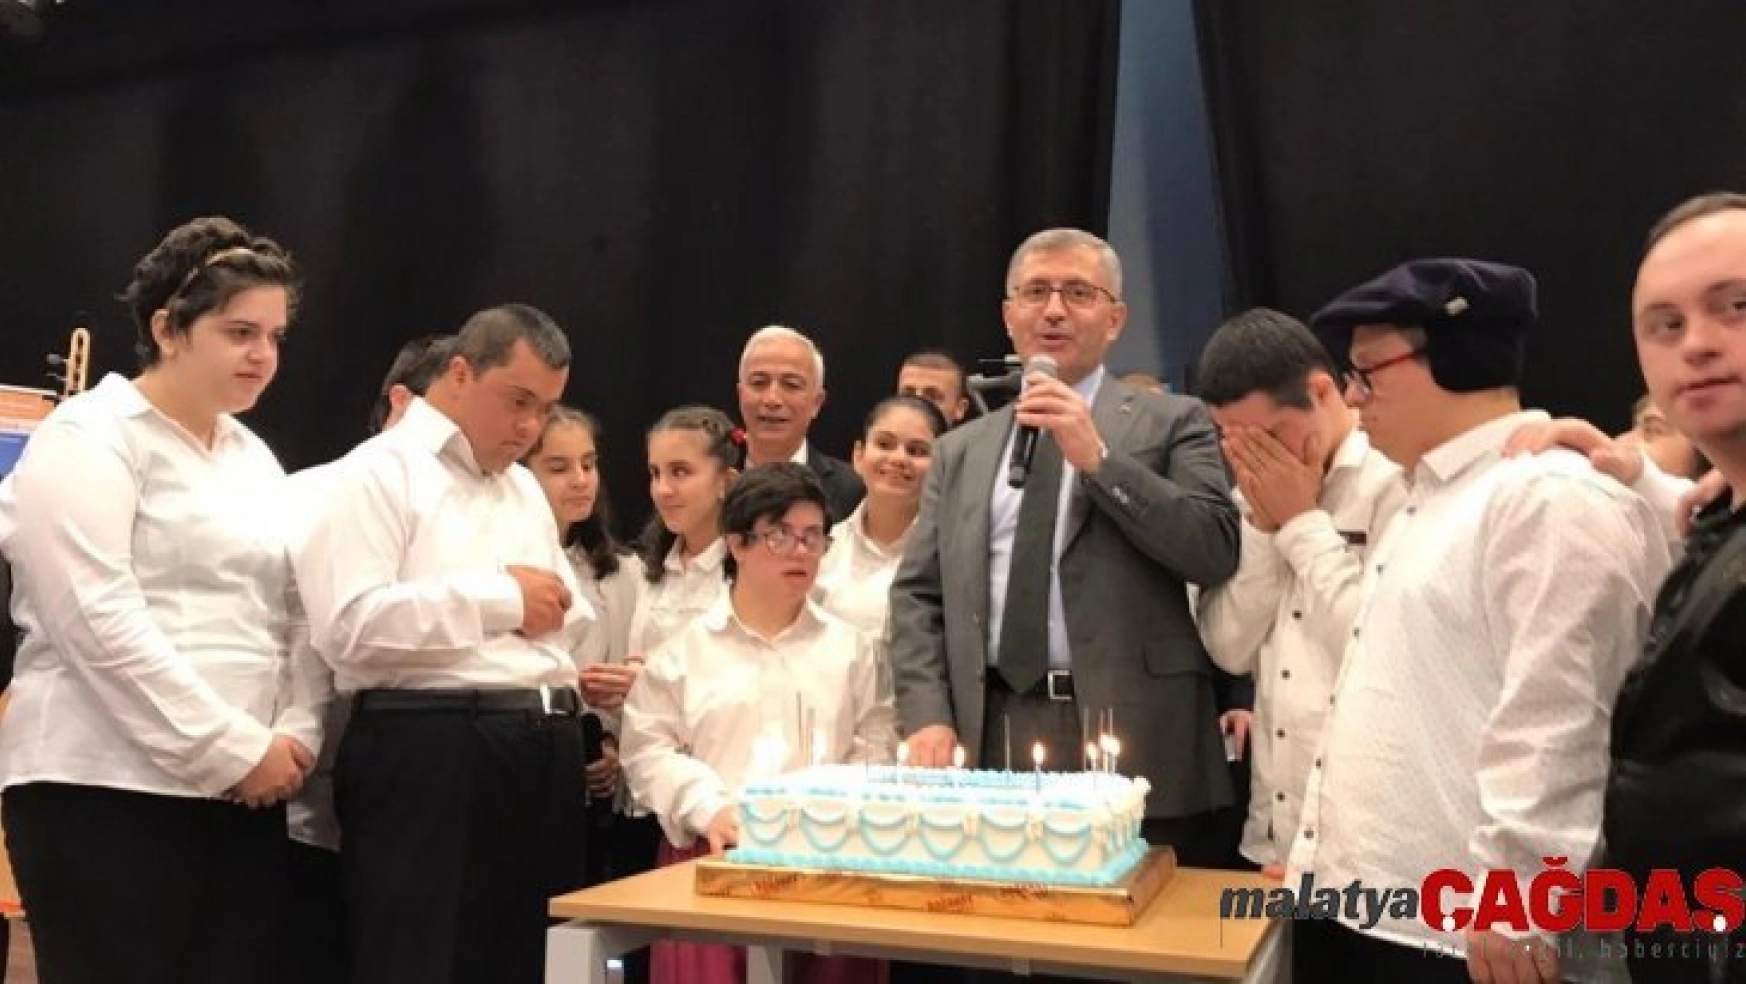 Üsküdar'daki Engelsiz Yaşam Merkezi'nin açılışının 1. yıl dönümü coşkuyla kutlandı